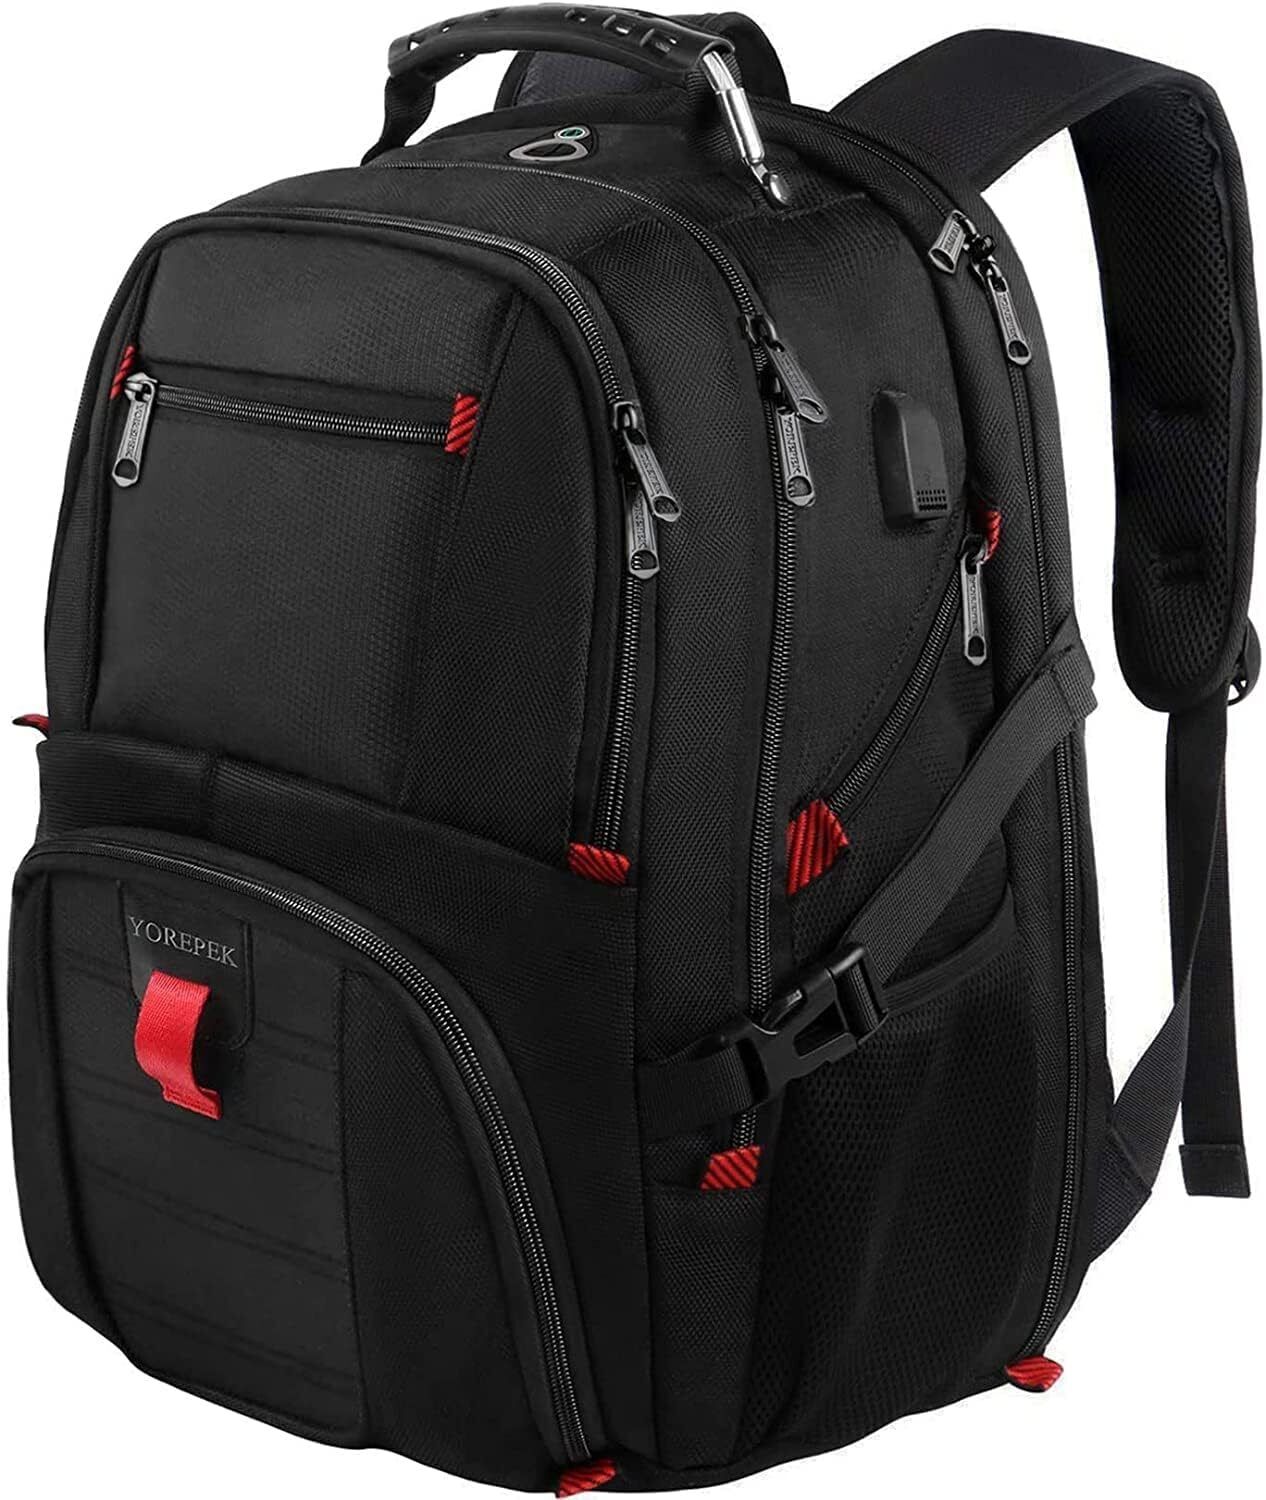 YOREPEK Travel Backpack, Extra Large 50L Laptop Backpacks for 17 inch, Black 